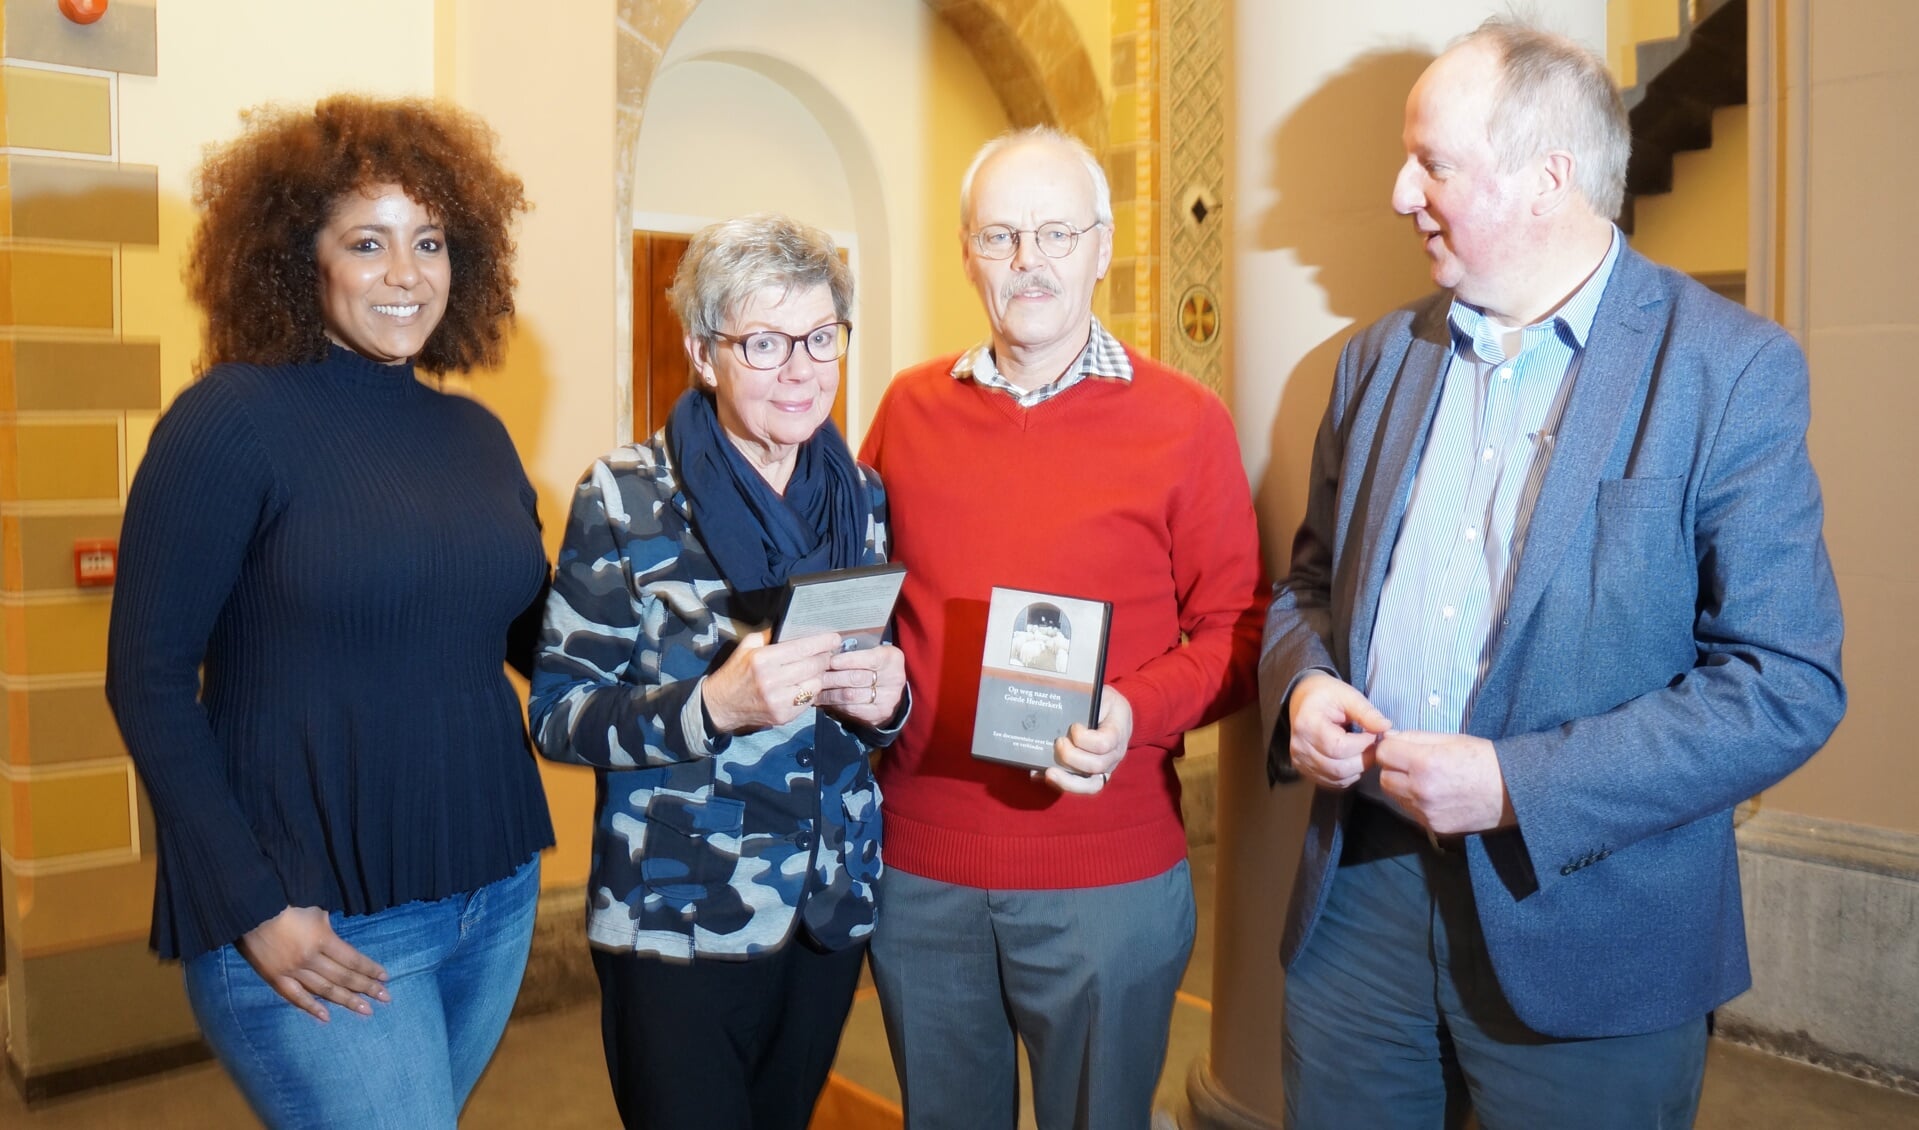 v.l.n.r.: Maaike Hin, Riet Heemskerk, Joop van Huut en Gerard van der Hulst (voorzitter kerkbestuur). 